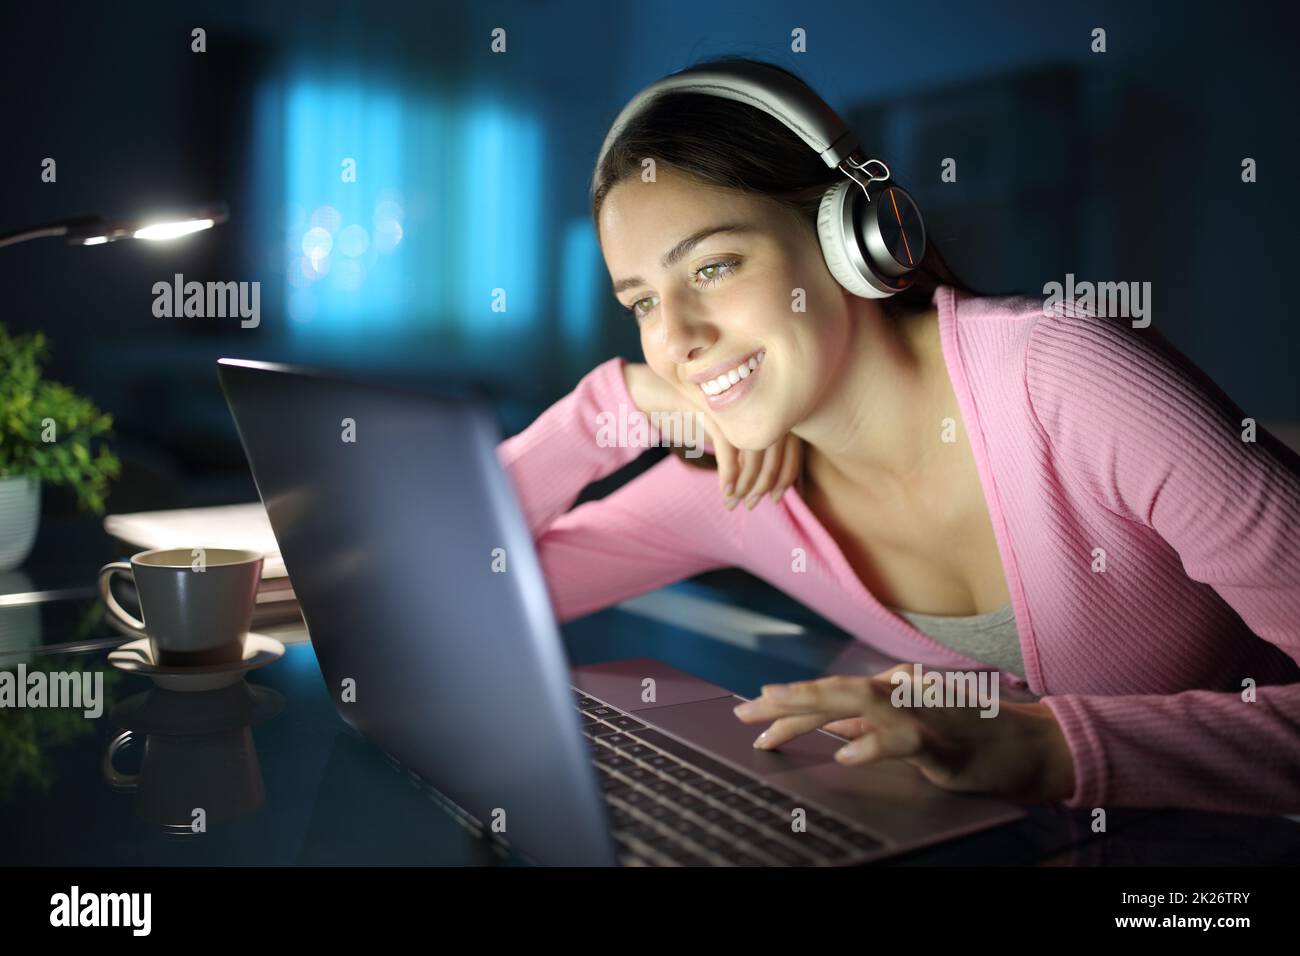 Bonne femme regardant des médias avec un ordinateur portable et un casque Banque D'Images